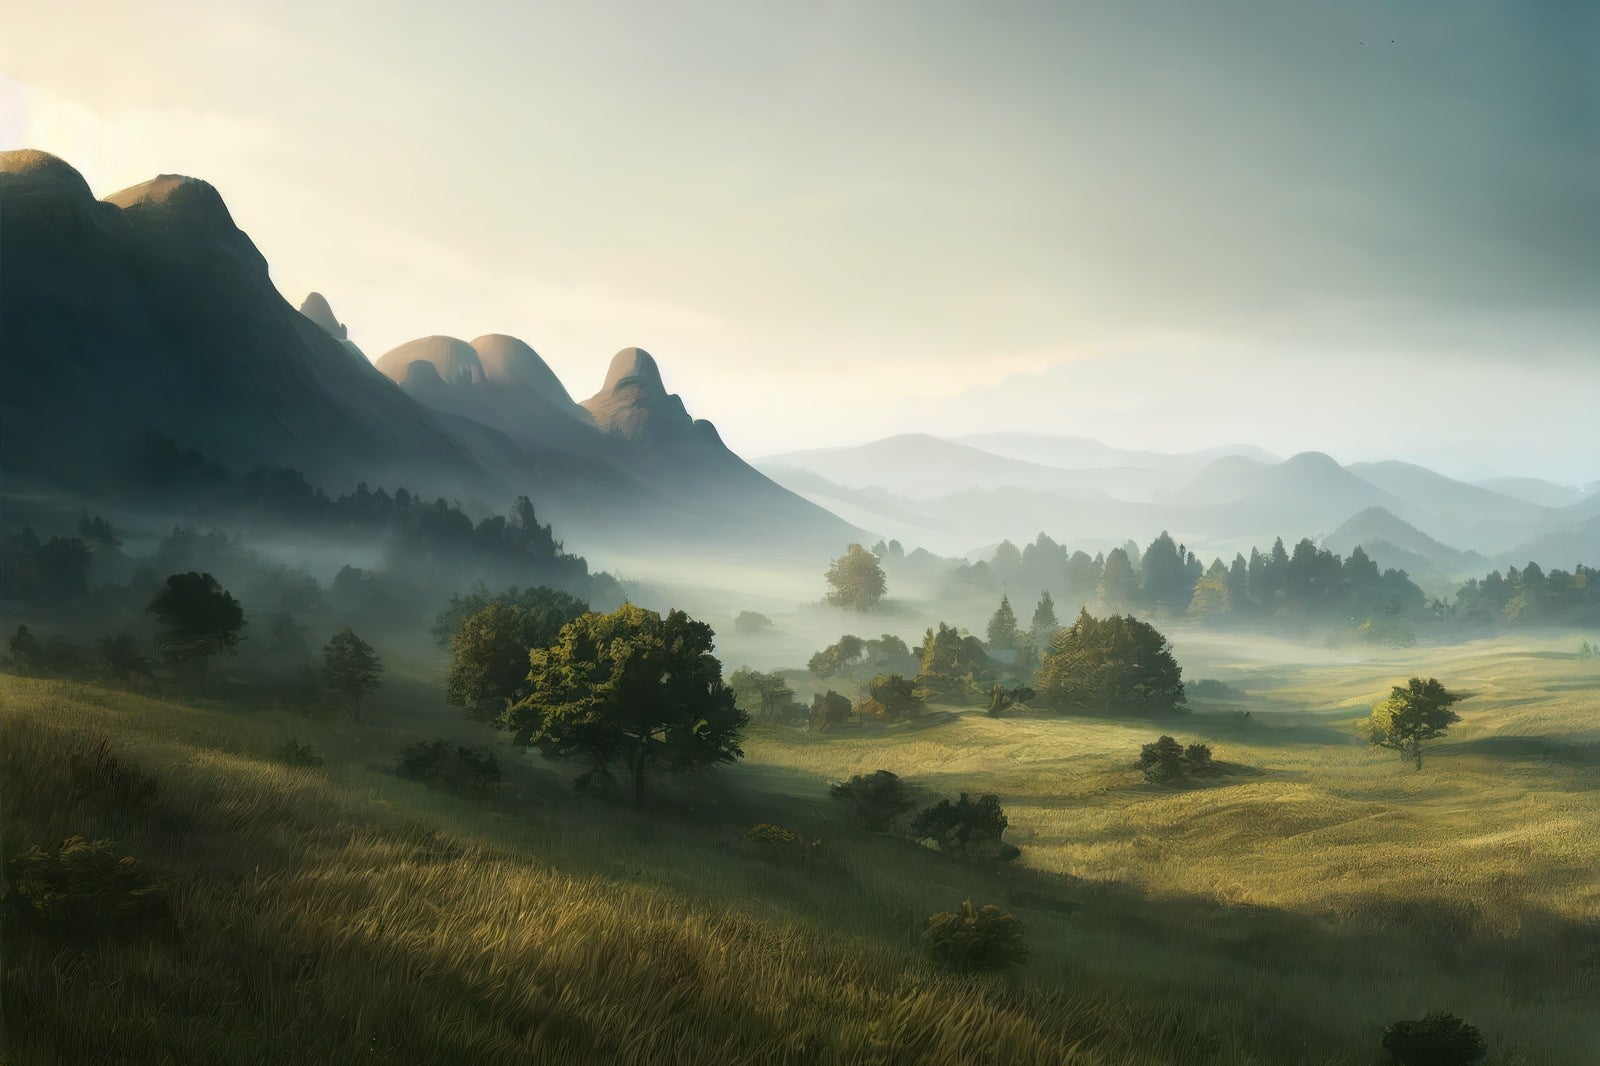 「濃霧が魅せる山間の絶景」の写真